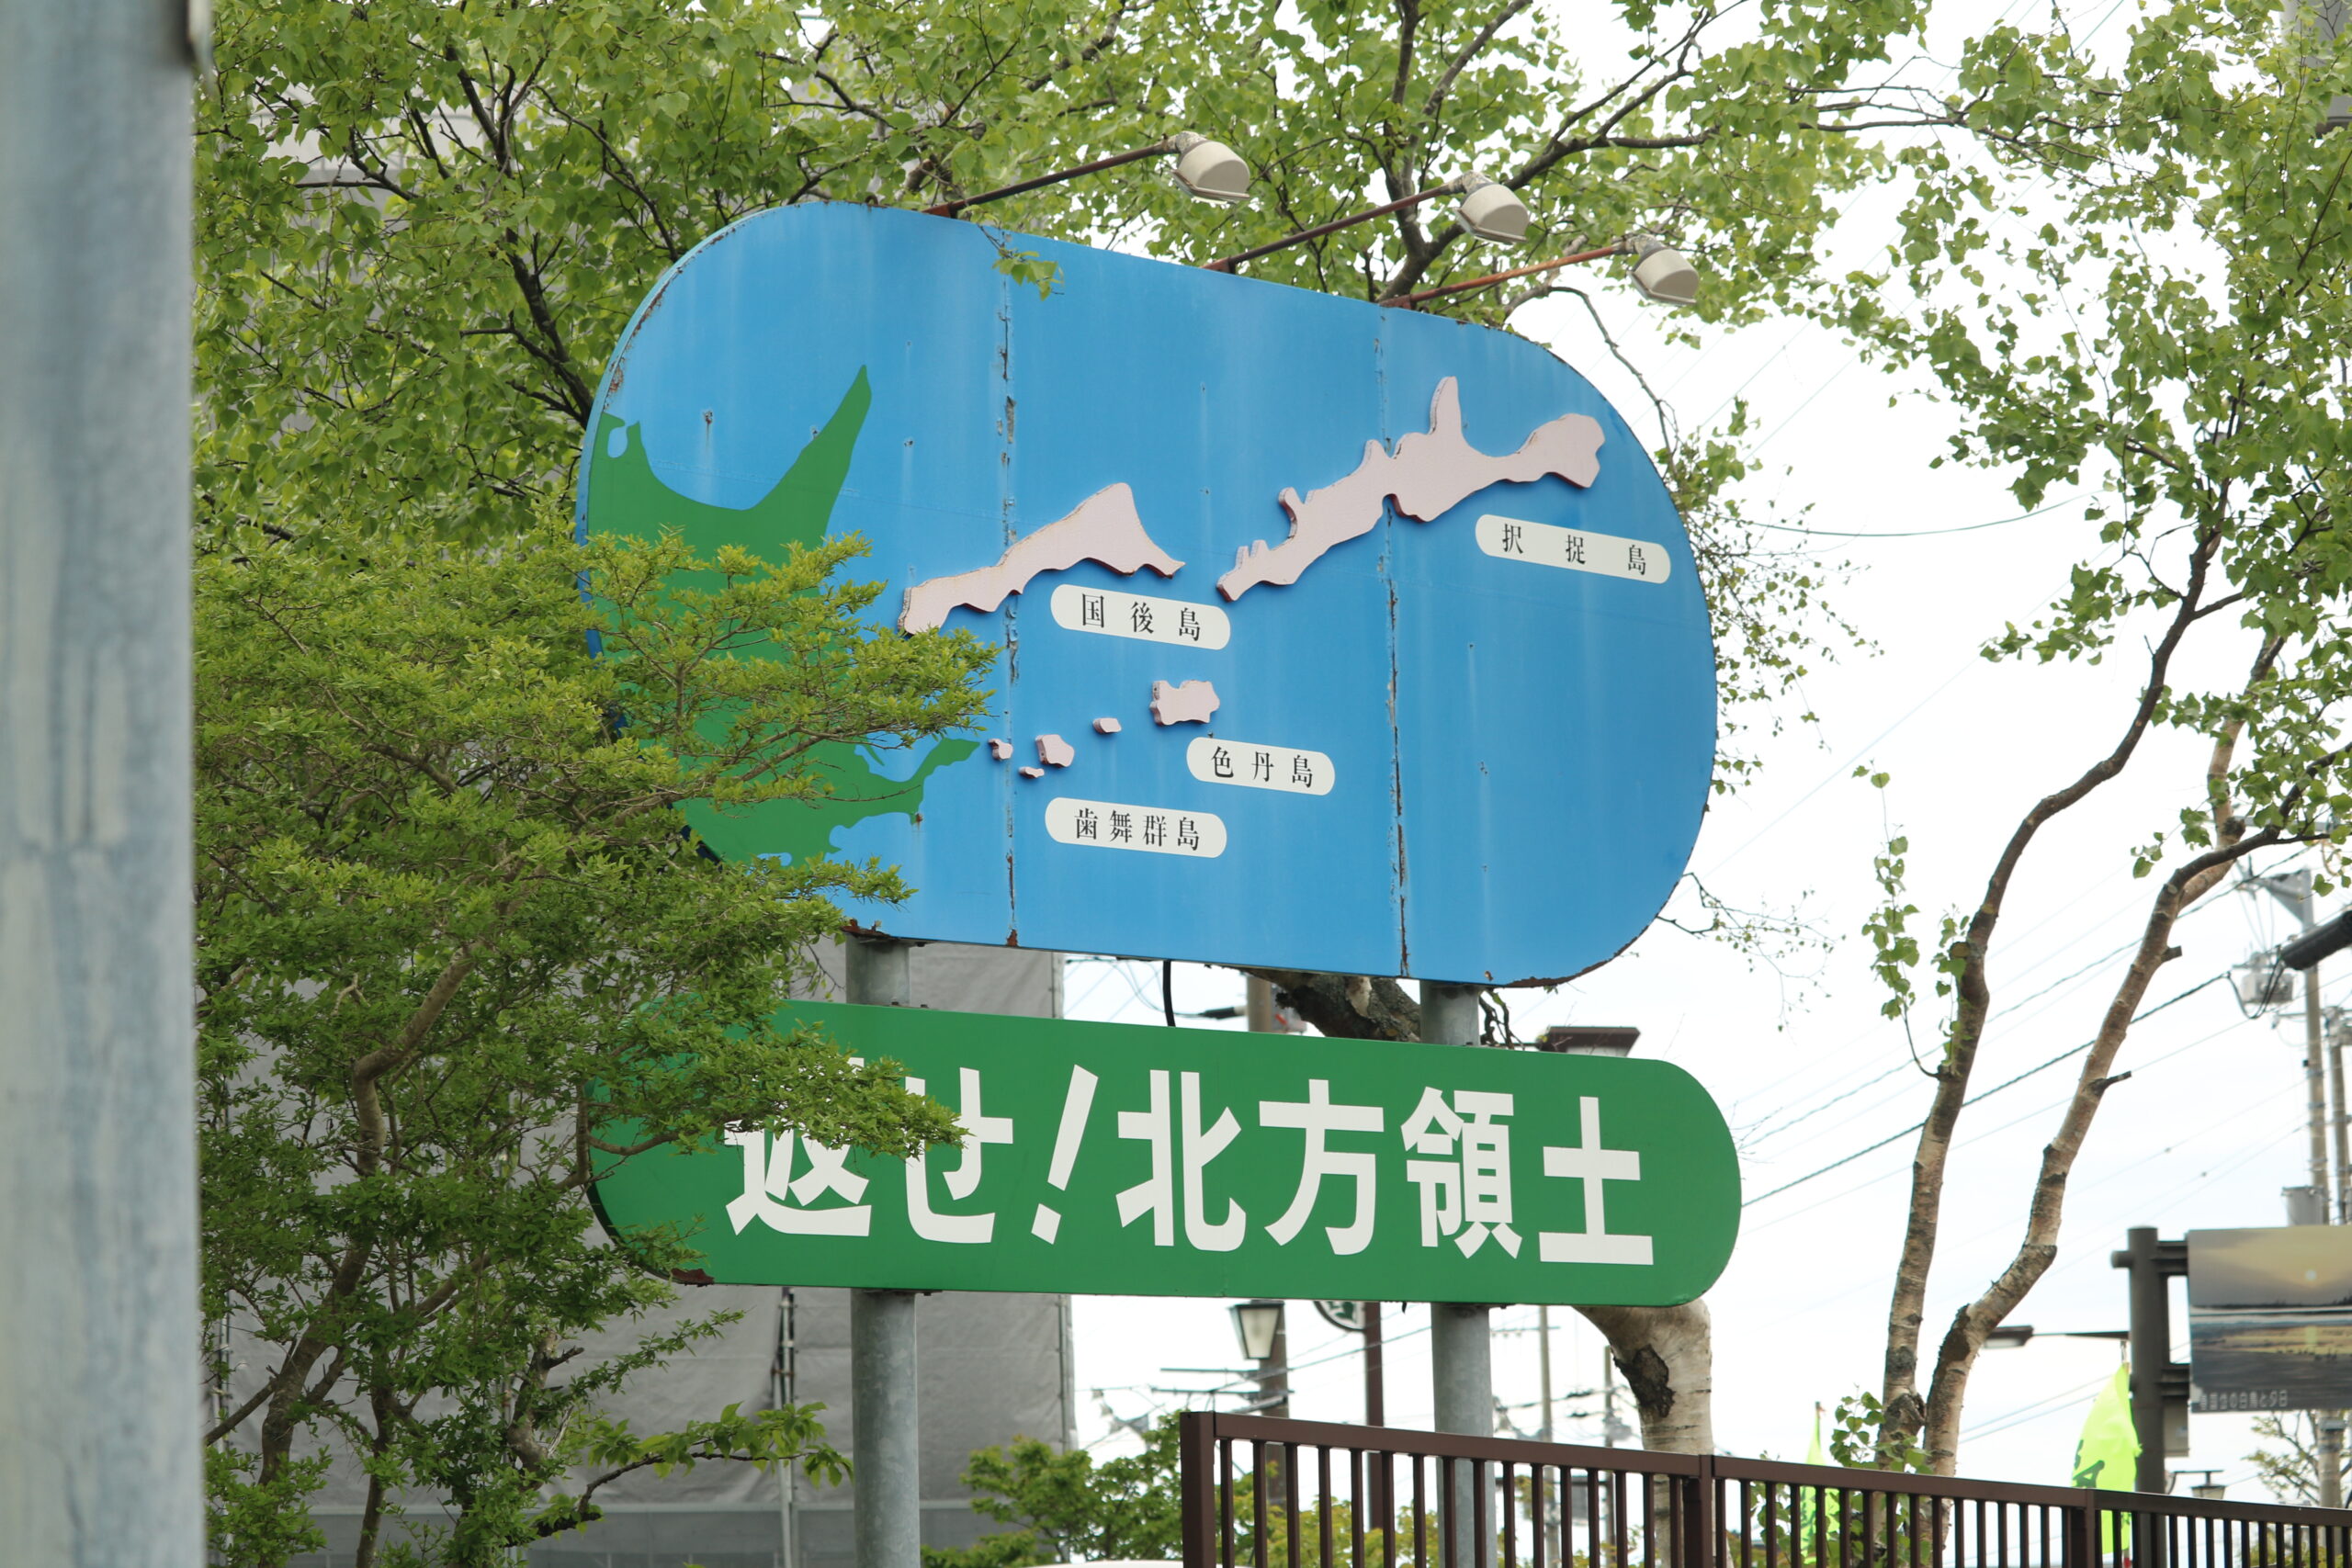 Schild in Nemuro: "Gebt die nördlichen Territorien zurück!